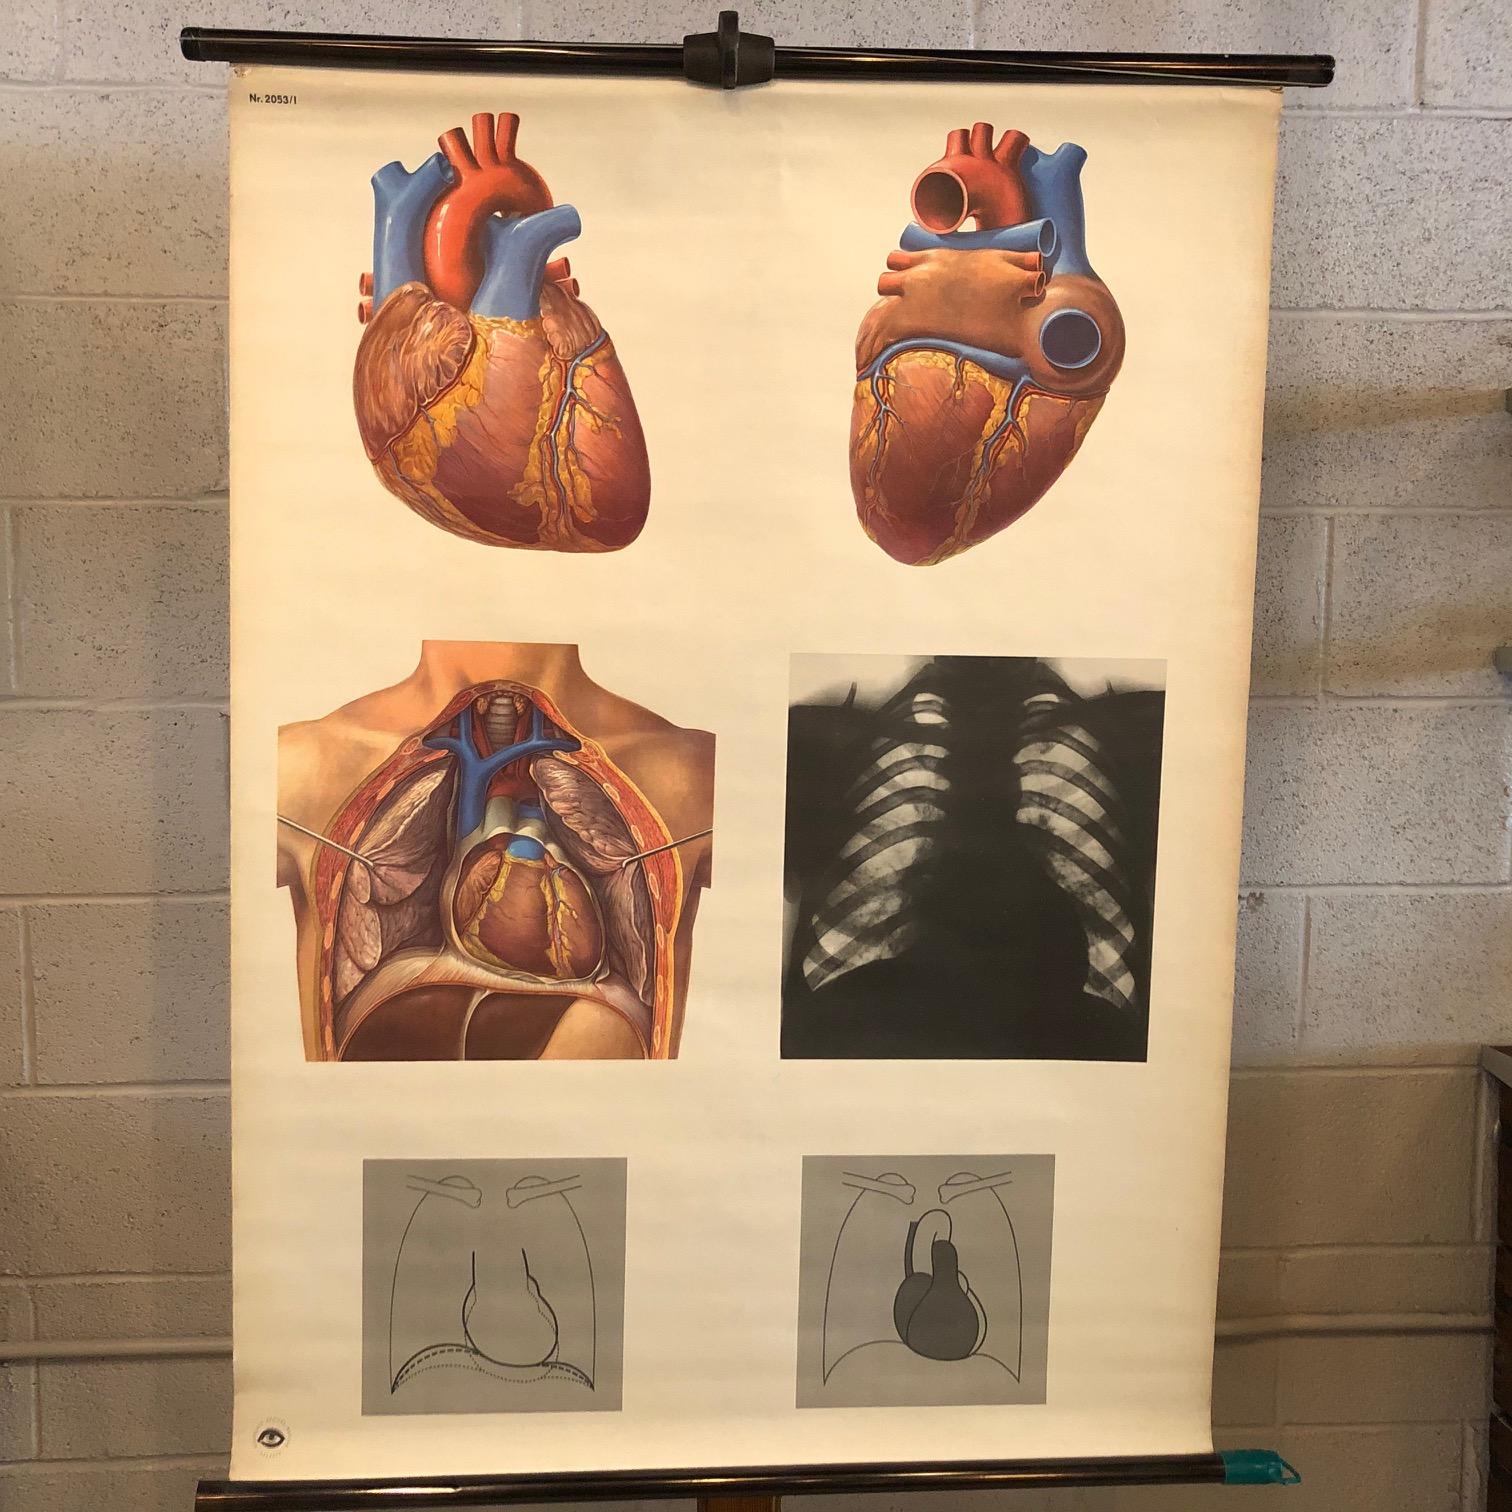 Das Herz aus dem Deutschen Hygiene Museum, Dresden, ist auf kupferfarbenen Stahlstäben auf Papier mit Leinwandunterlage gedruckt und stellt das Herz dar.
   